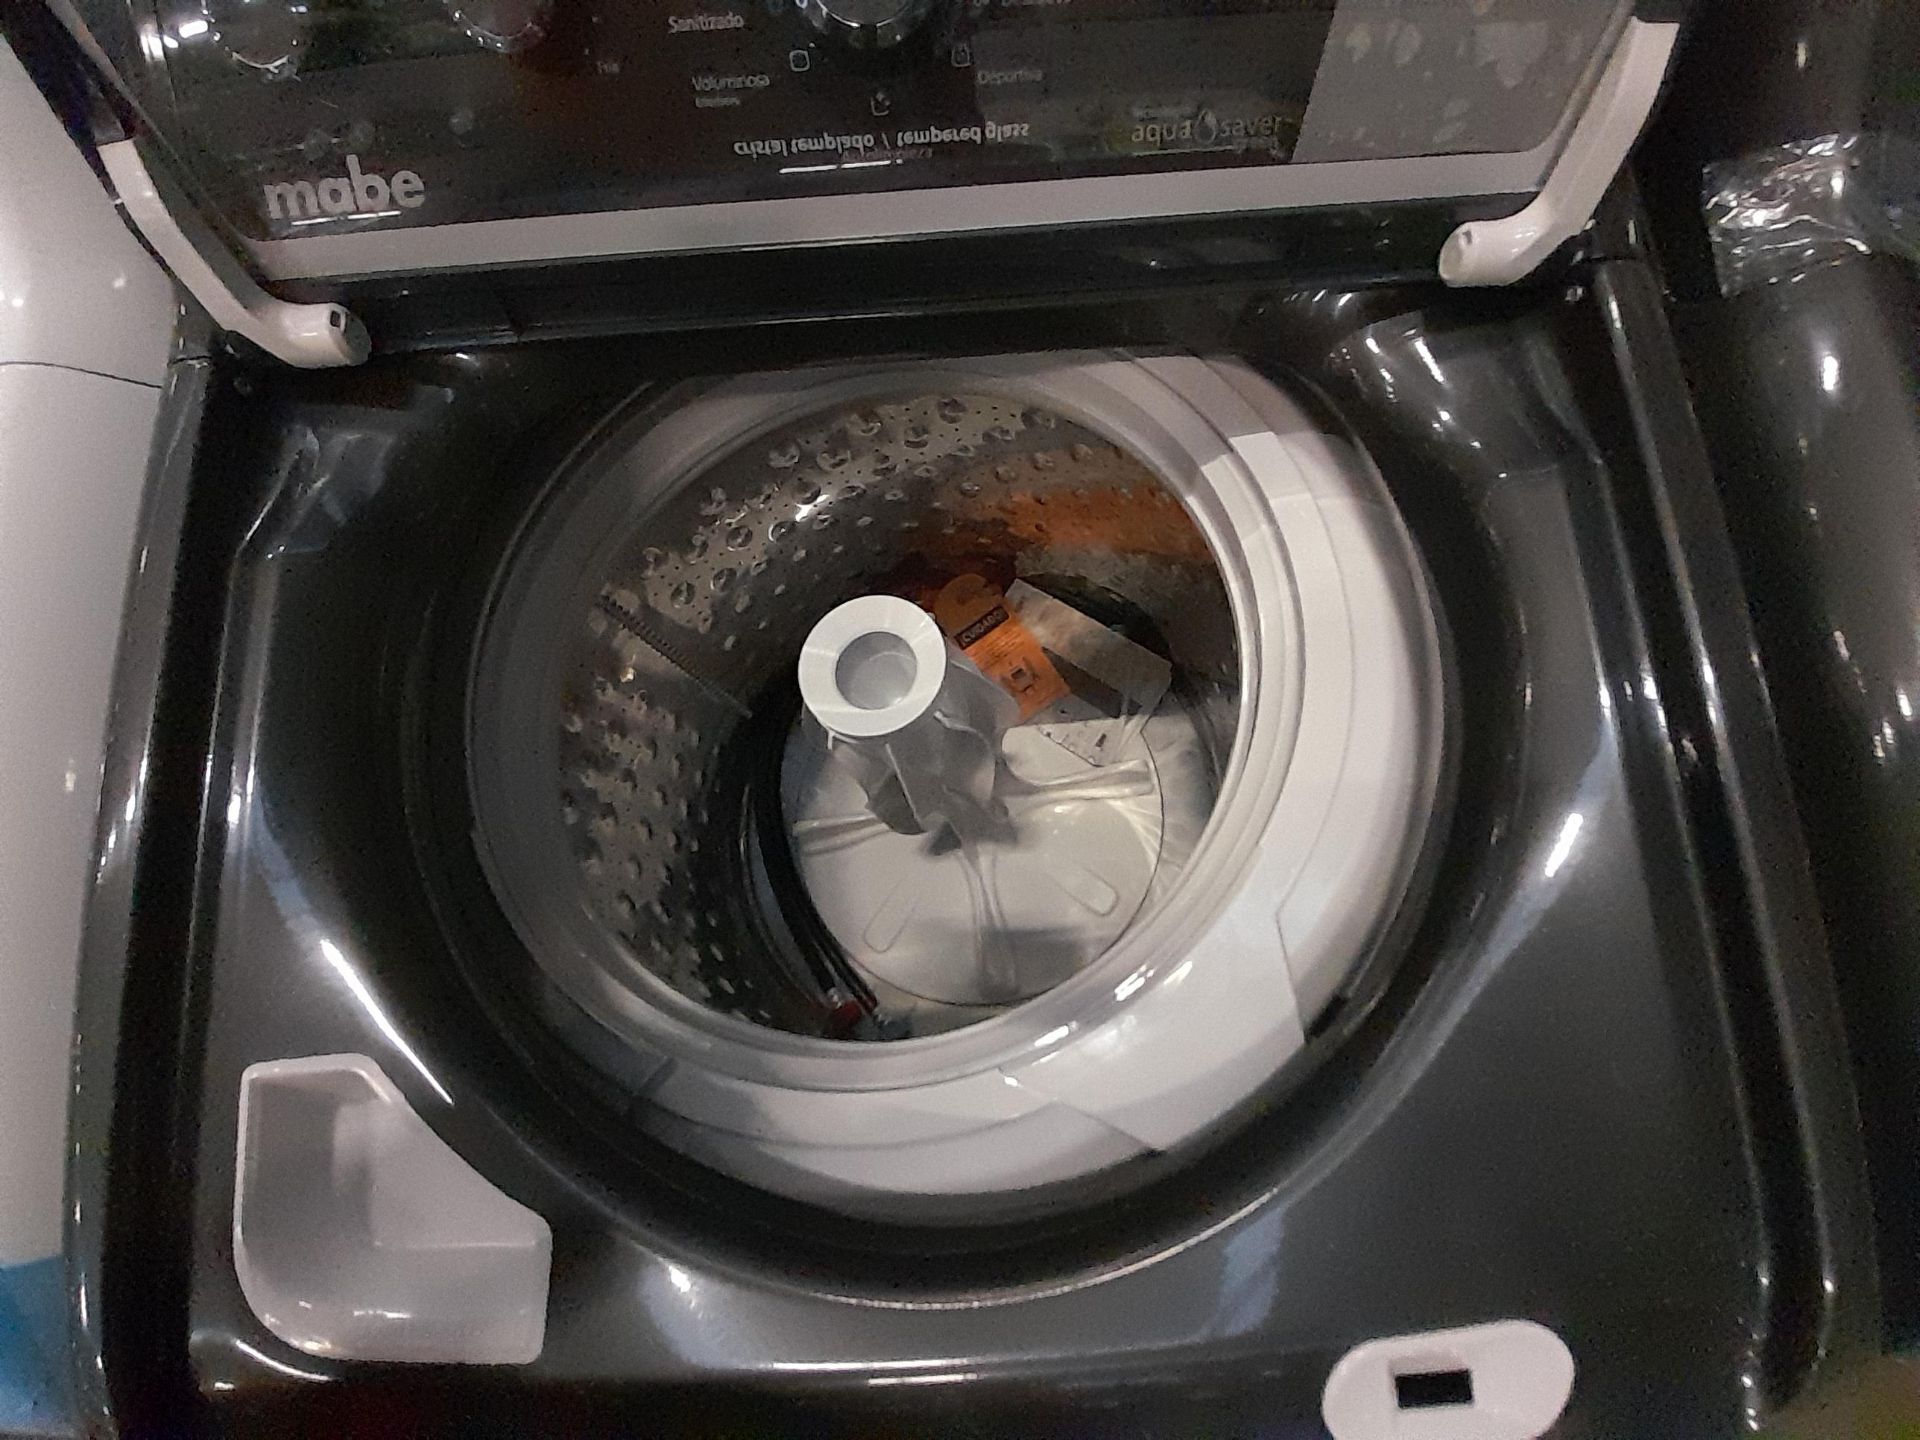 Lote de 2 lavadoras Contiene: 1 lavadora de 21 KG, marca MABE, modelo LMA71215WDAB00, serie S21011, - Image 5 of 6